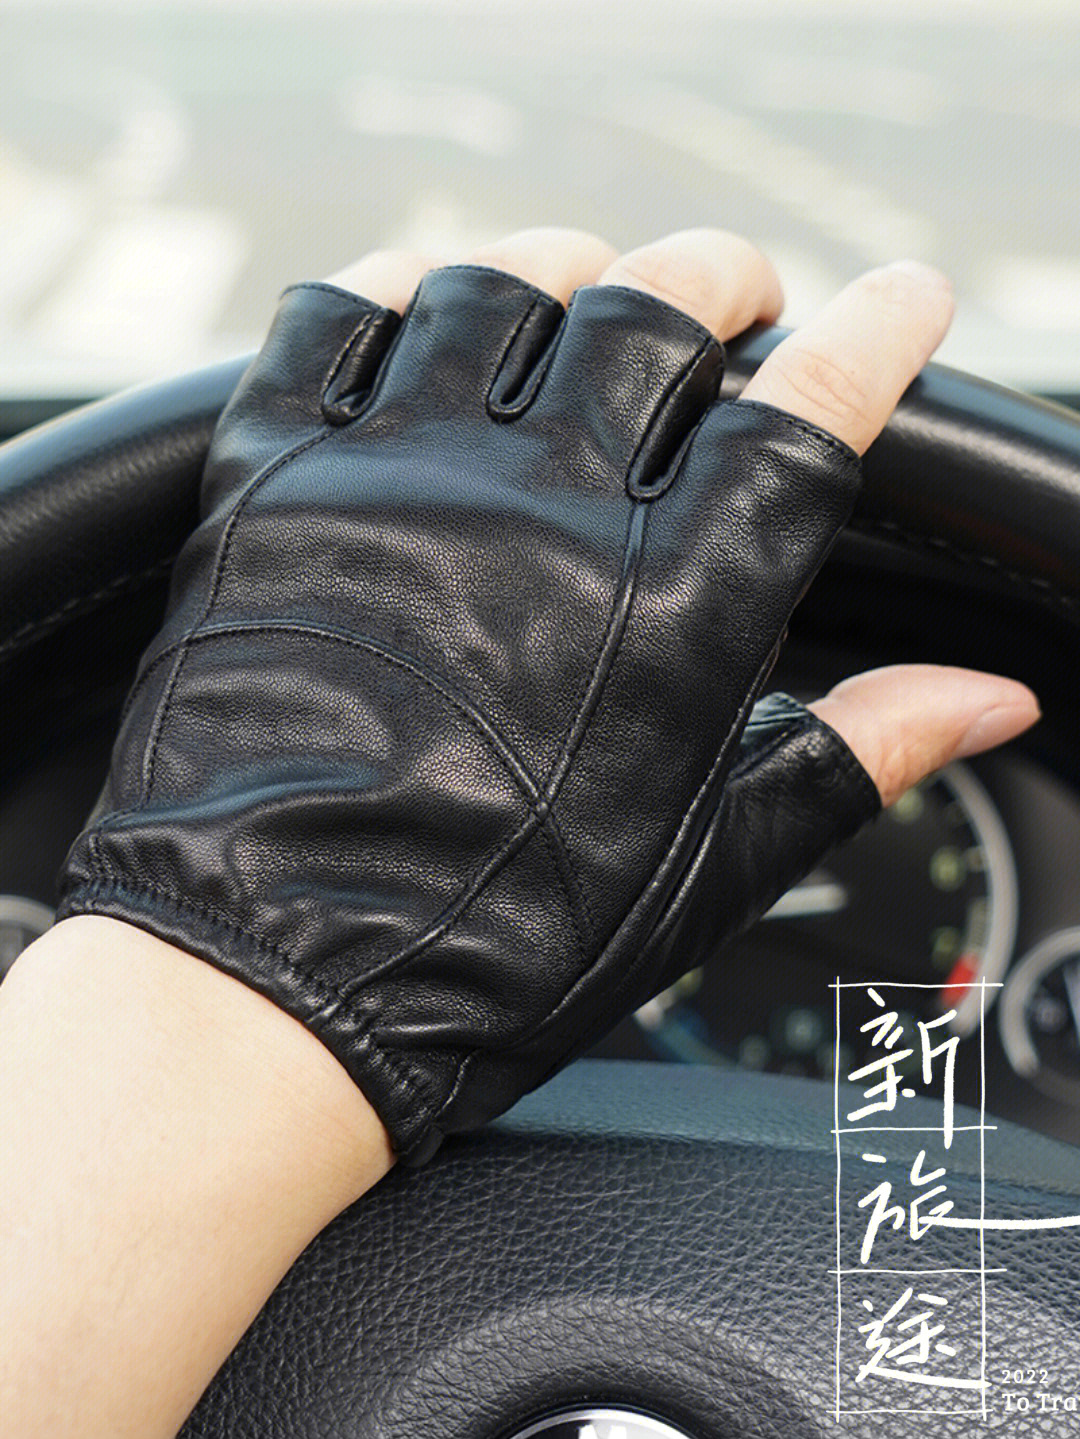 很多朋友都还不知道开车为什么要戴皮手套